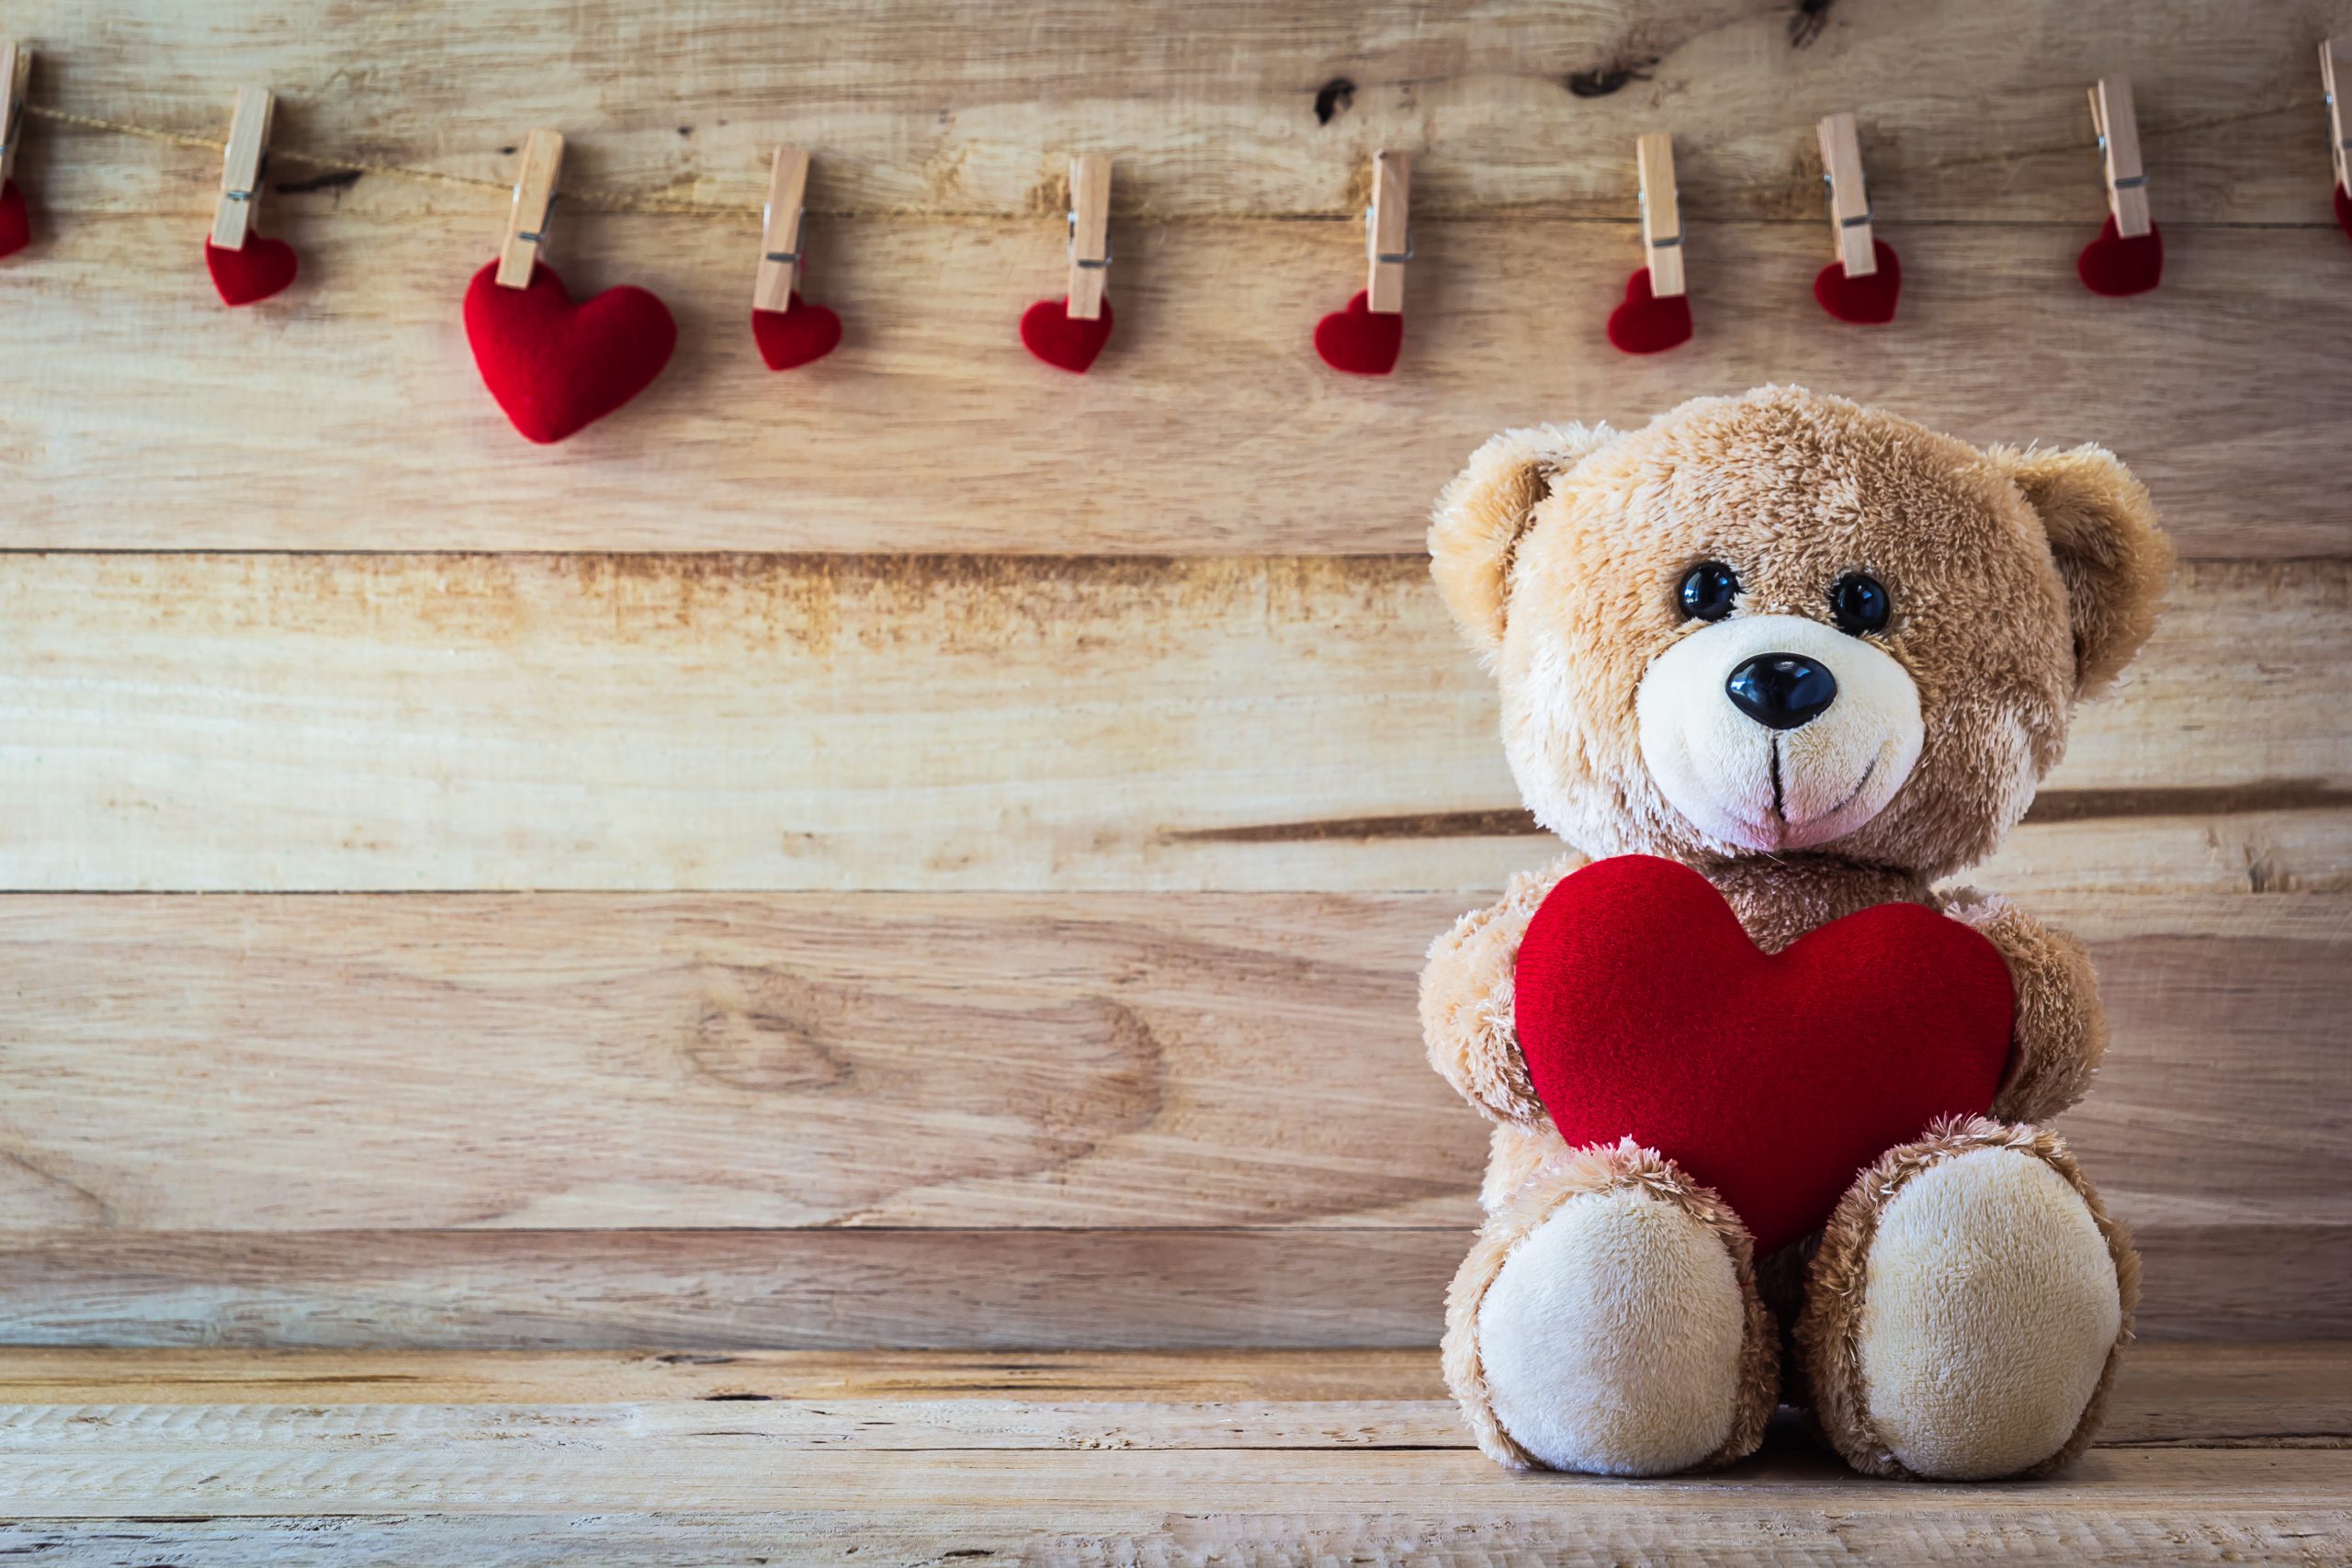 teddy bear and hearts